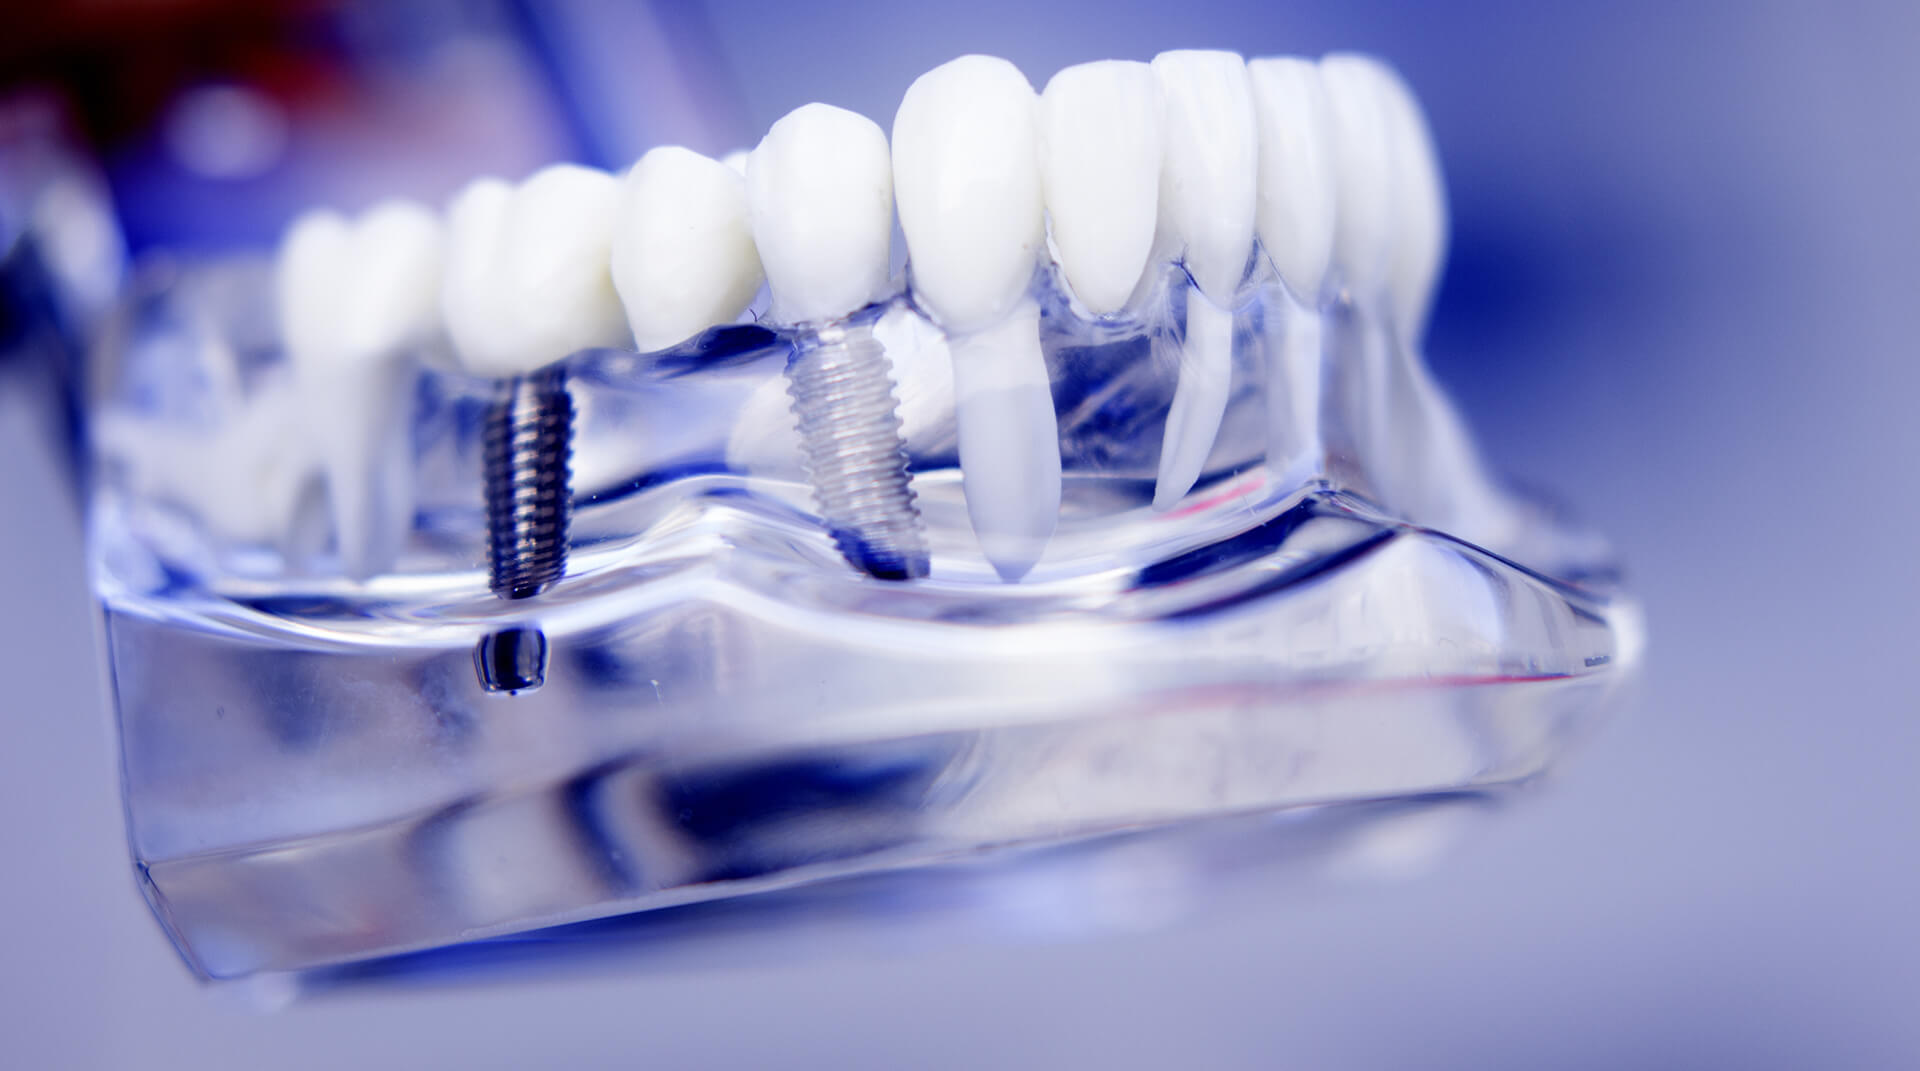 teeth model showing dental implants